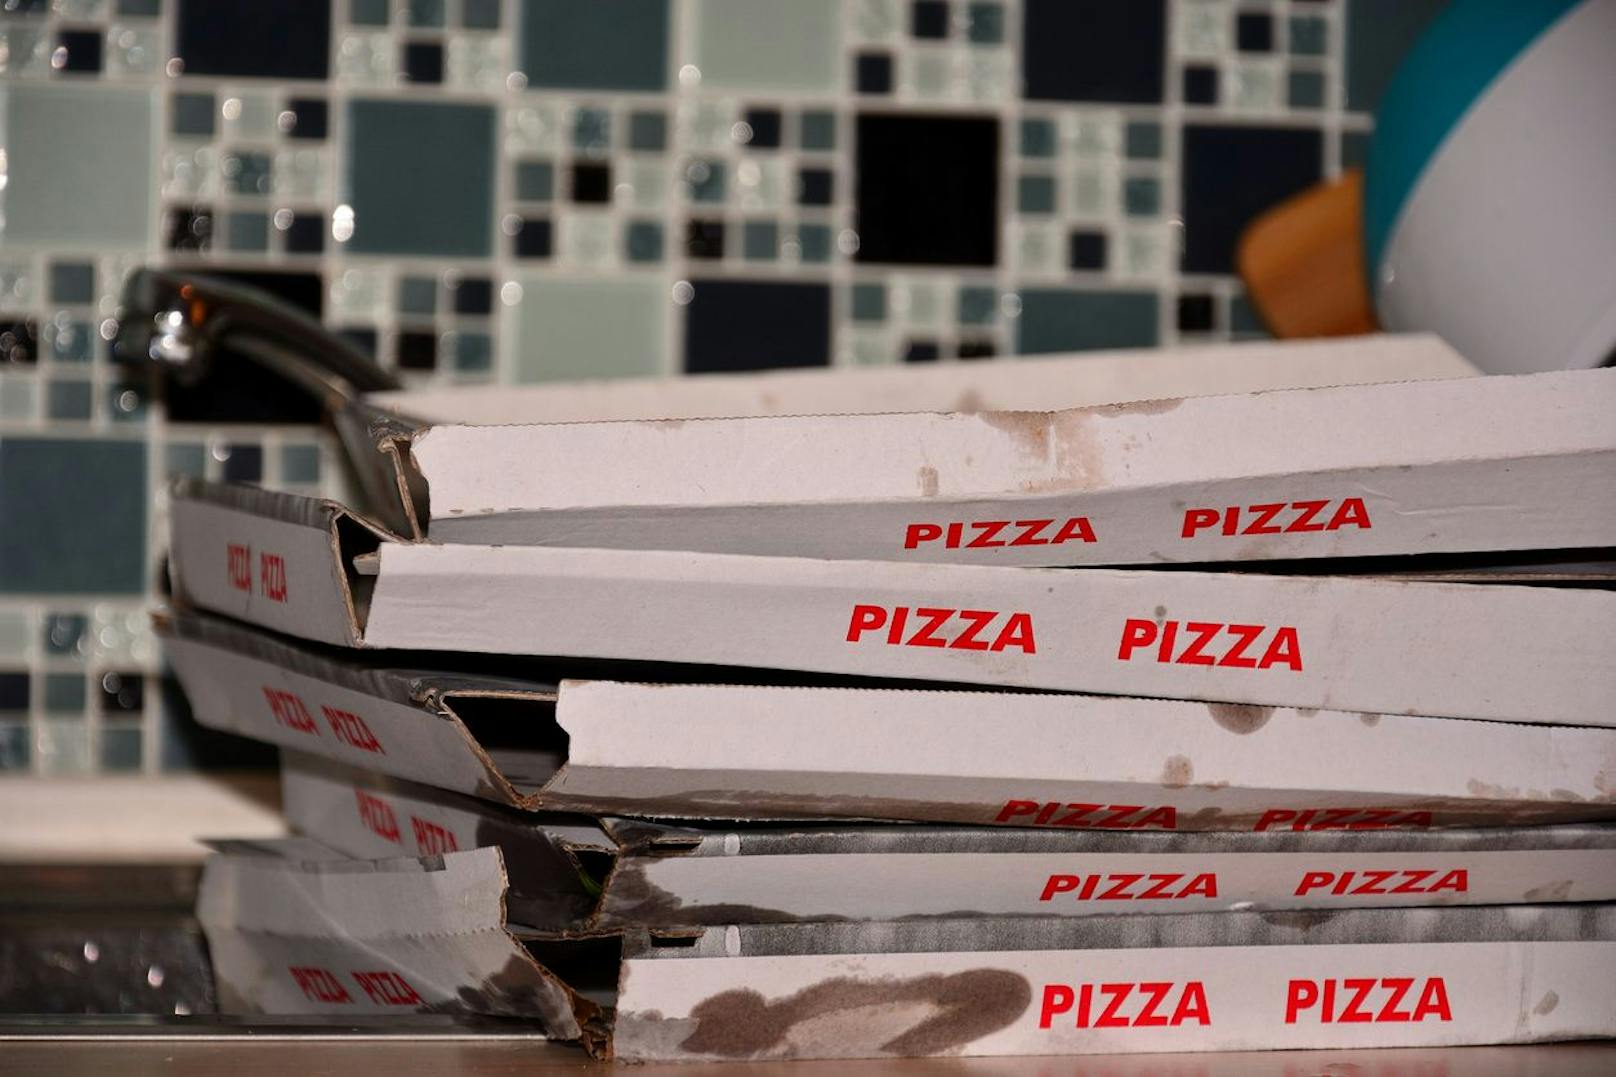 Deine benutzten Pizzakartons sind häufig mit Lebensmittelresten verunreinigt worden und besitzen außerdem eine fettabweisende Schicht. Ein klarer Fall für den Restmüll.